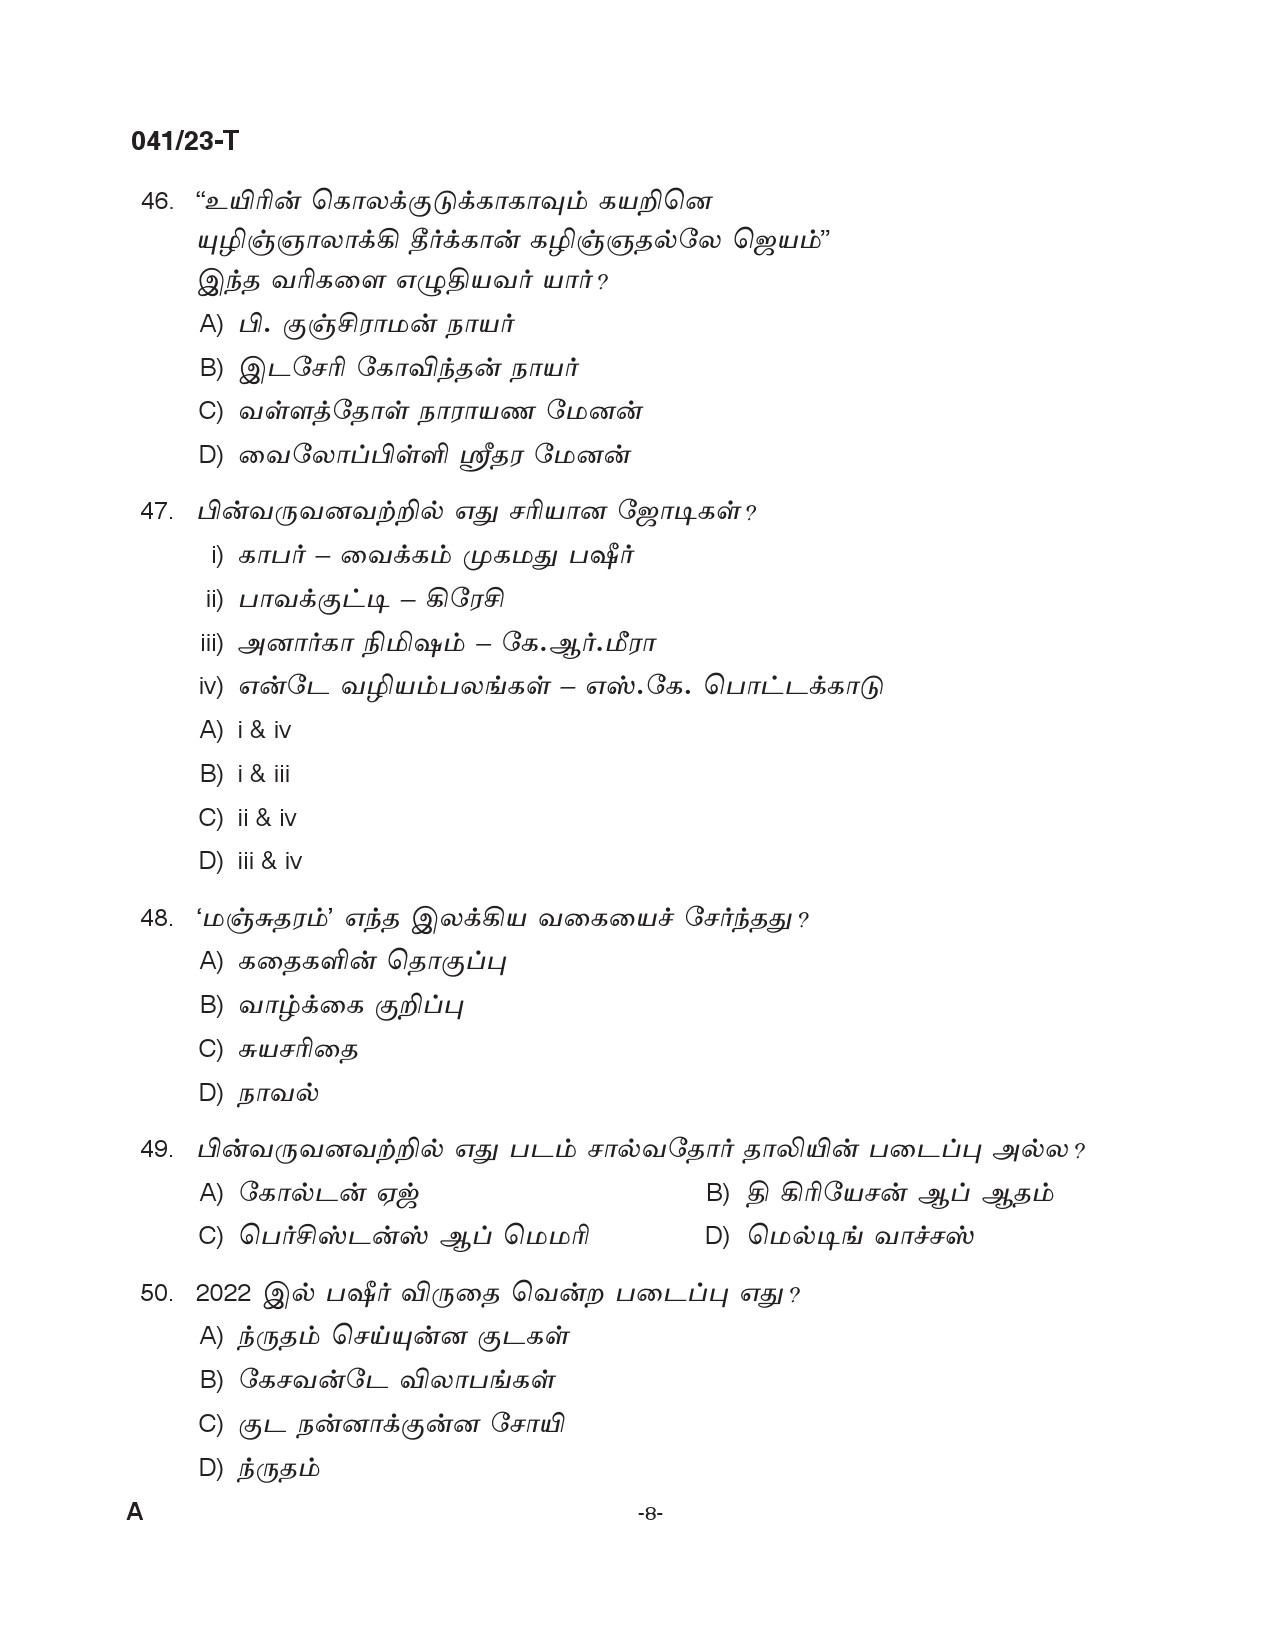 KPSC Civil Excise Officer Plus Two Level Main Exam 2022 Tamil 0412023 7